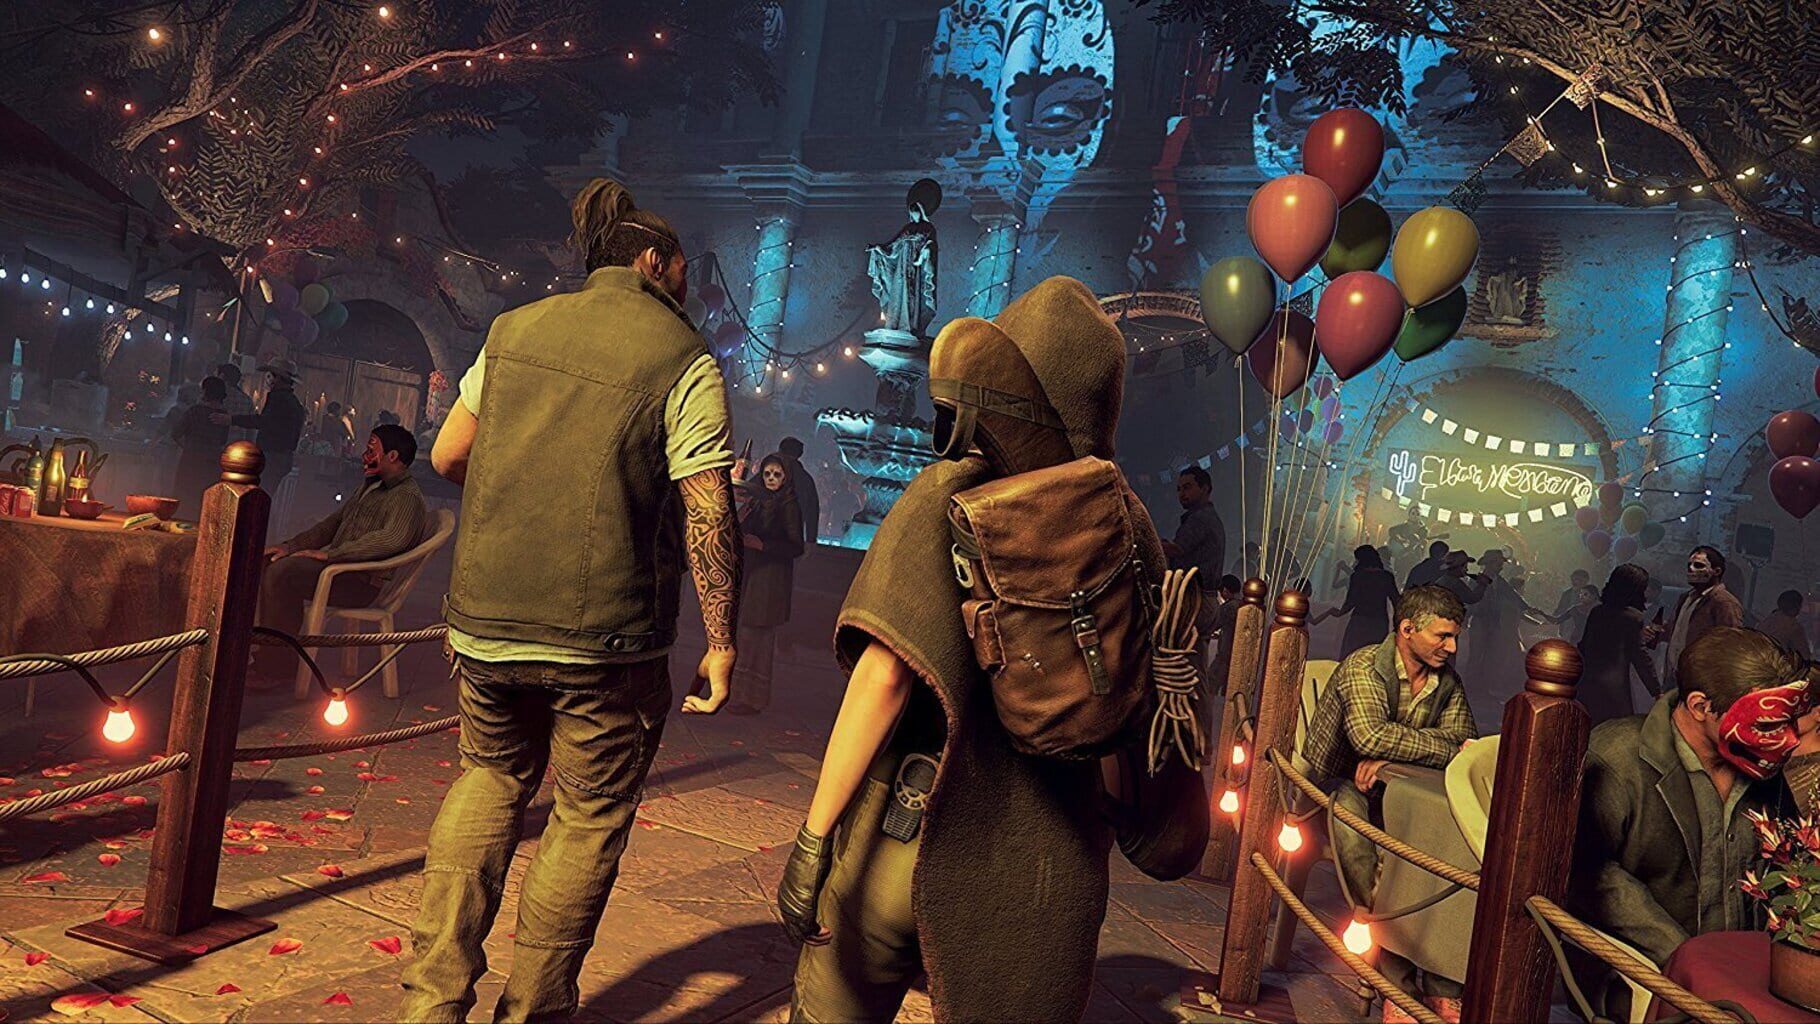 Captura de pantalla - Shadow of the Tomb Raider